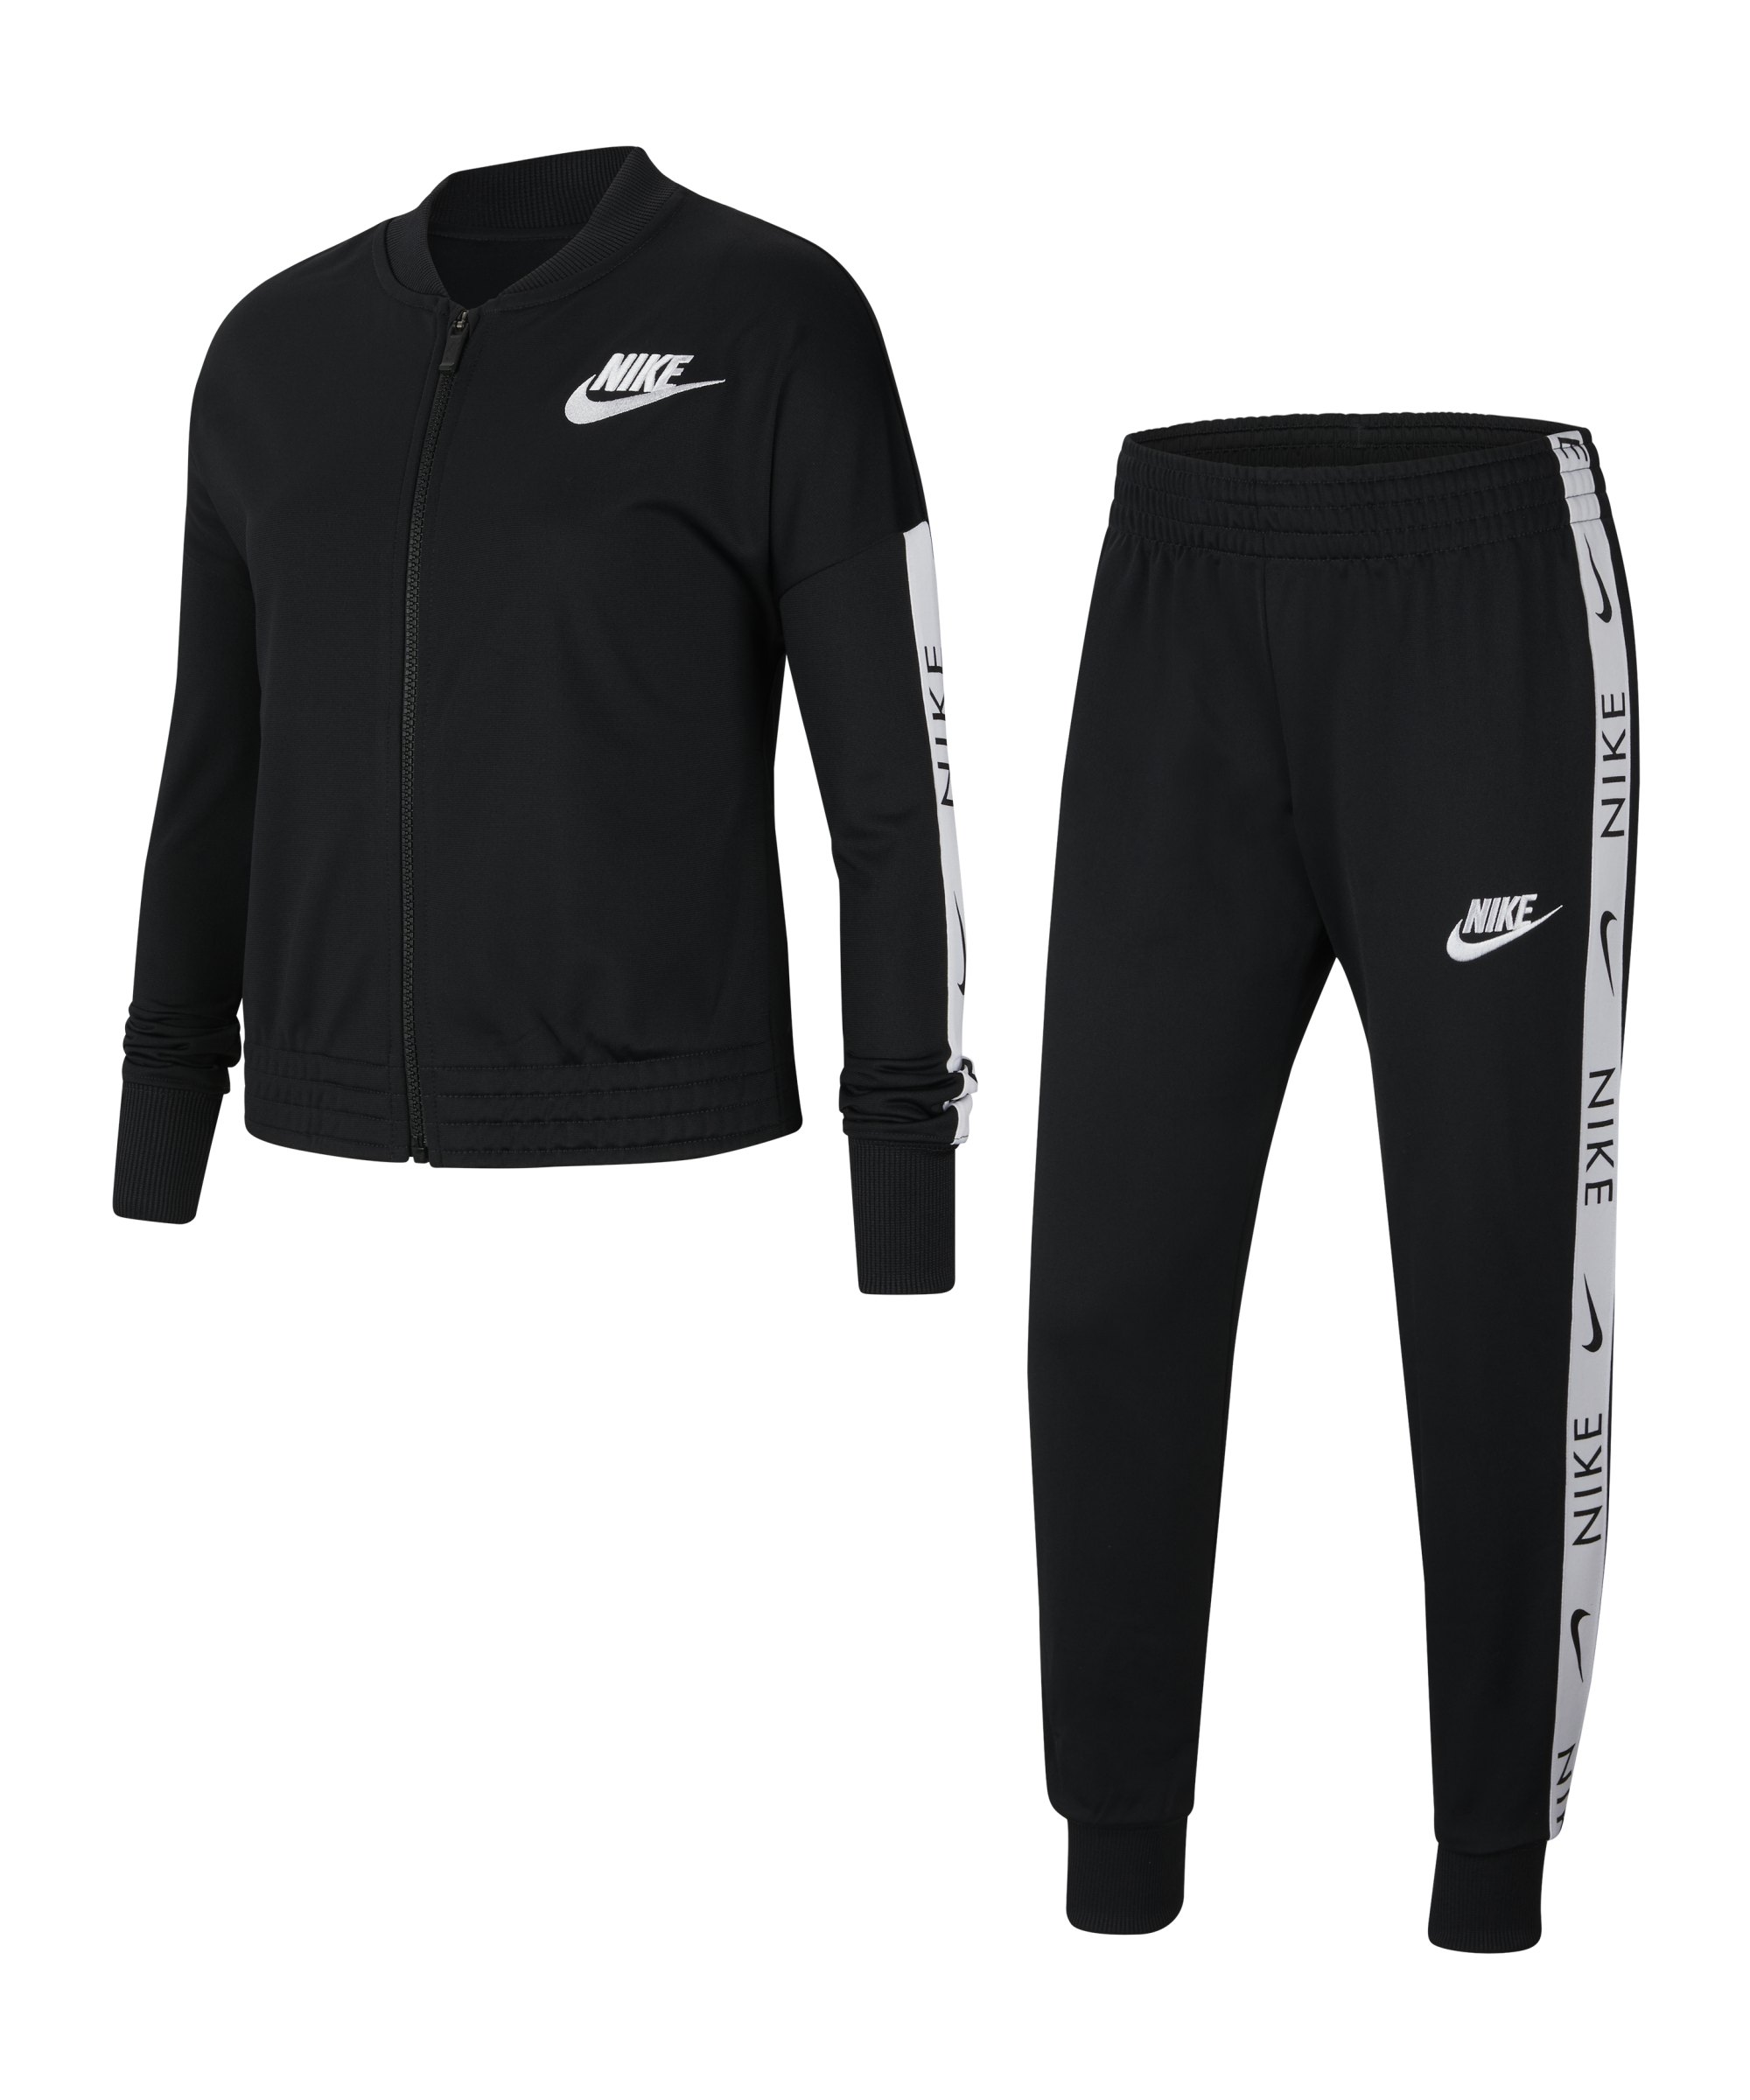 Nike Freizeitanzug Kids Schwarz F010 - schwarz